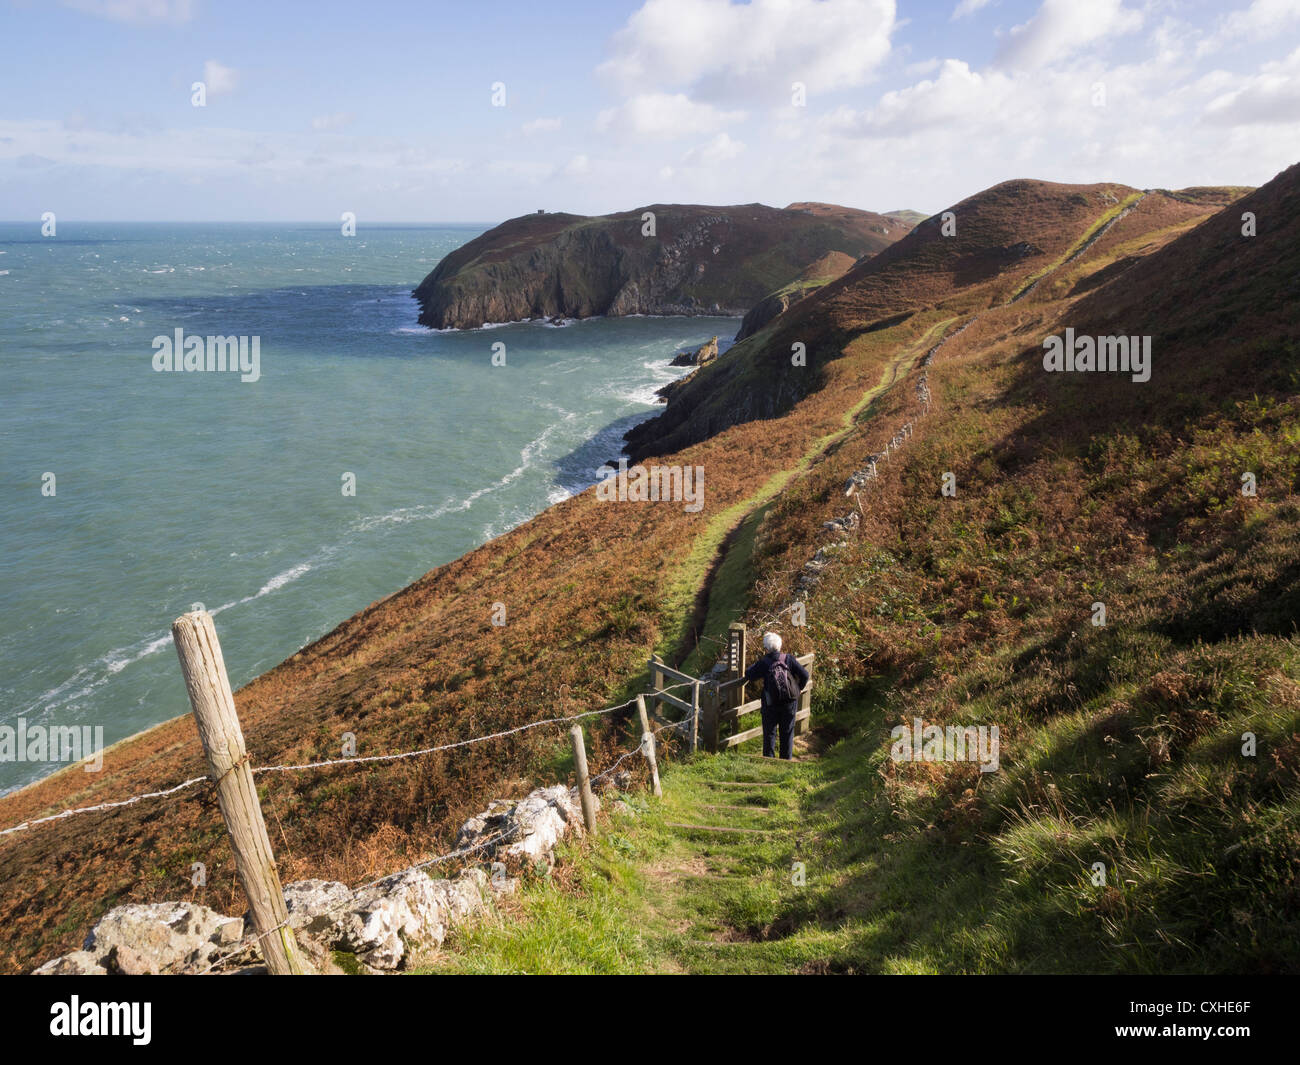 Walker walking down a l'article de l'île d'Anglesey Sentier côtier avec vue sur le long de côte sauvage près de Cemaes Anglesey au nord du Pays de Galles UK Banque D'Images